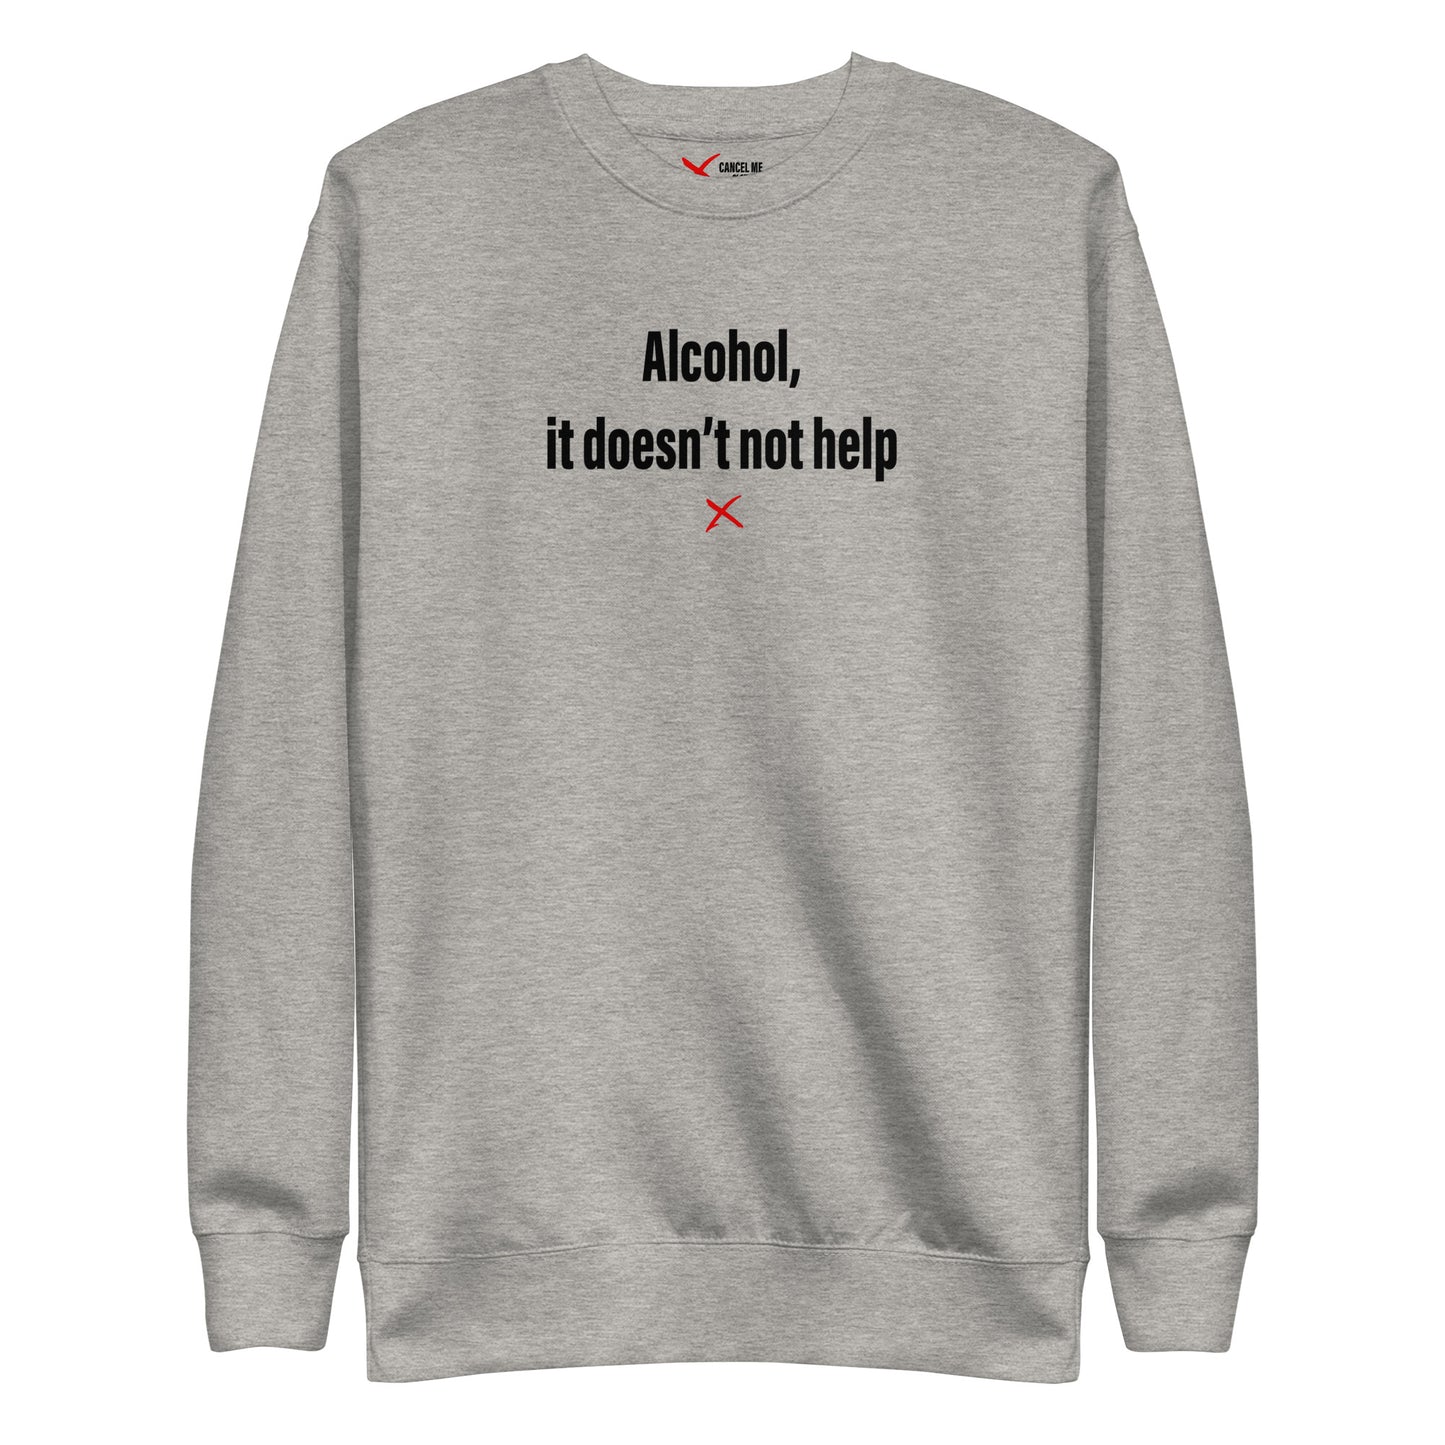 Alcohol, it doesn't not help - Sweatshirt